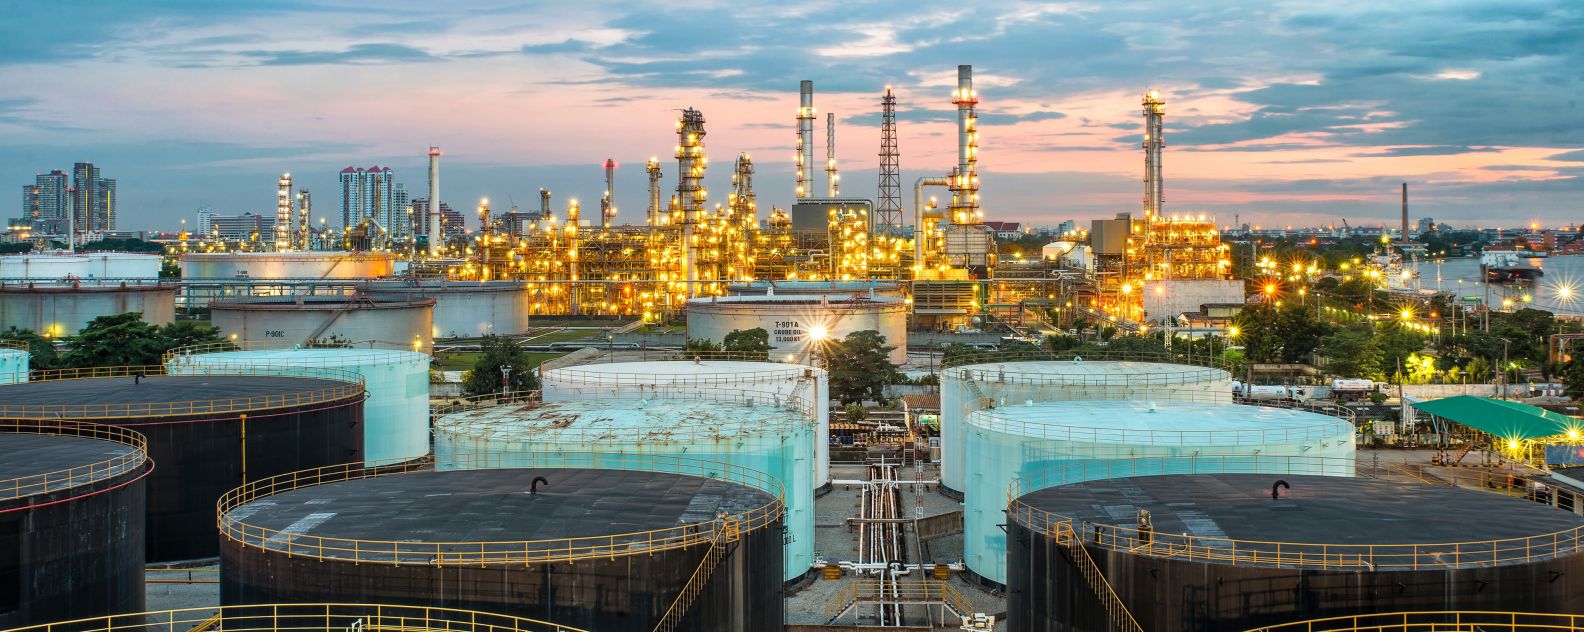 Luftfoto einer Ölraffinerie